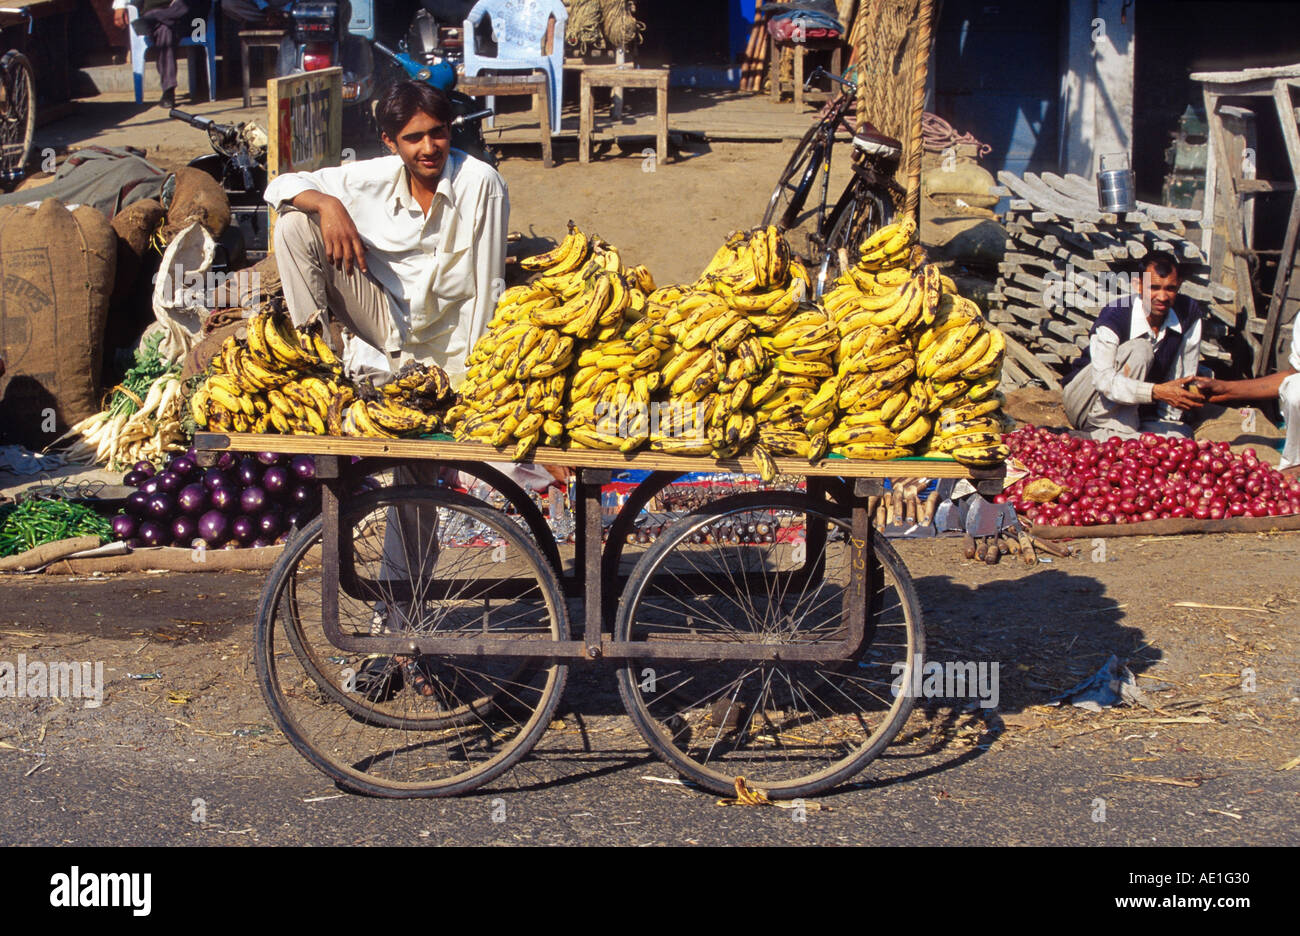 Vendeur de bananes, assis sur un chariot, l'Inde, Uttar Pradesh Banque D'Images